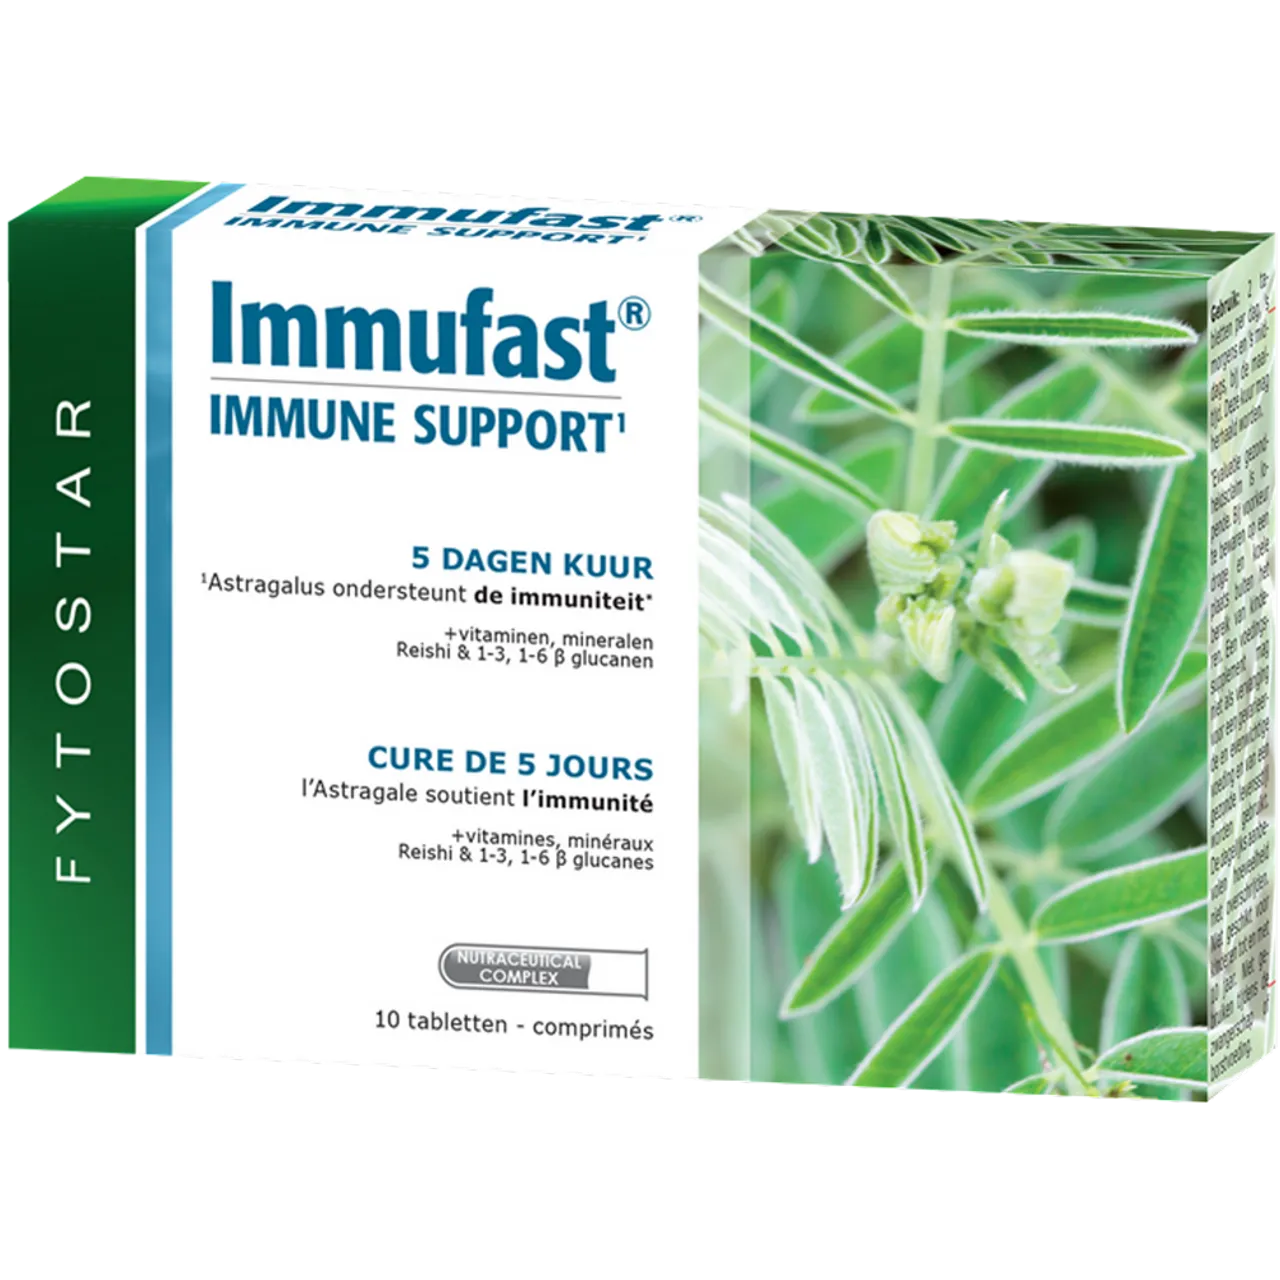 Fytostar Immufast Immune Support